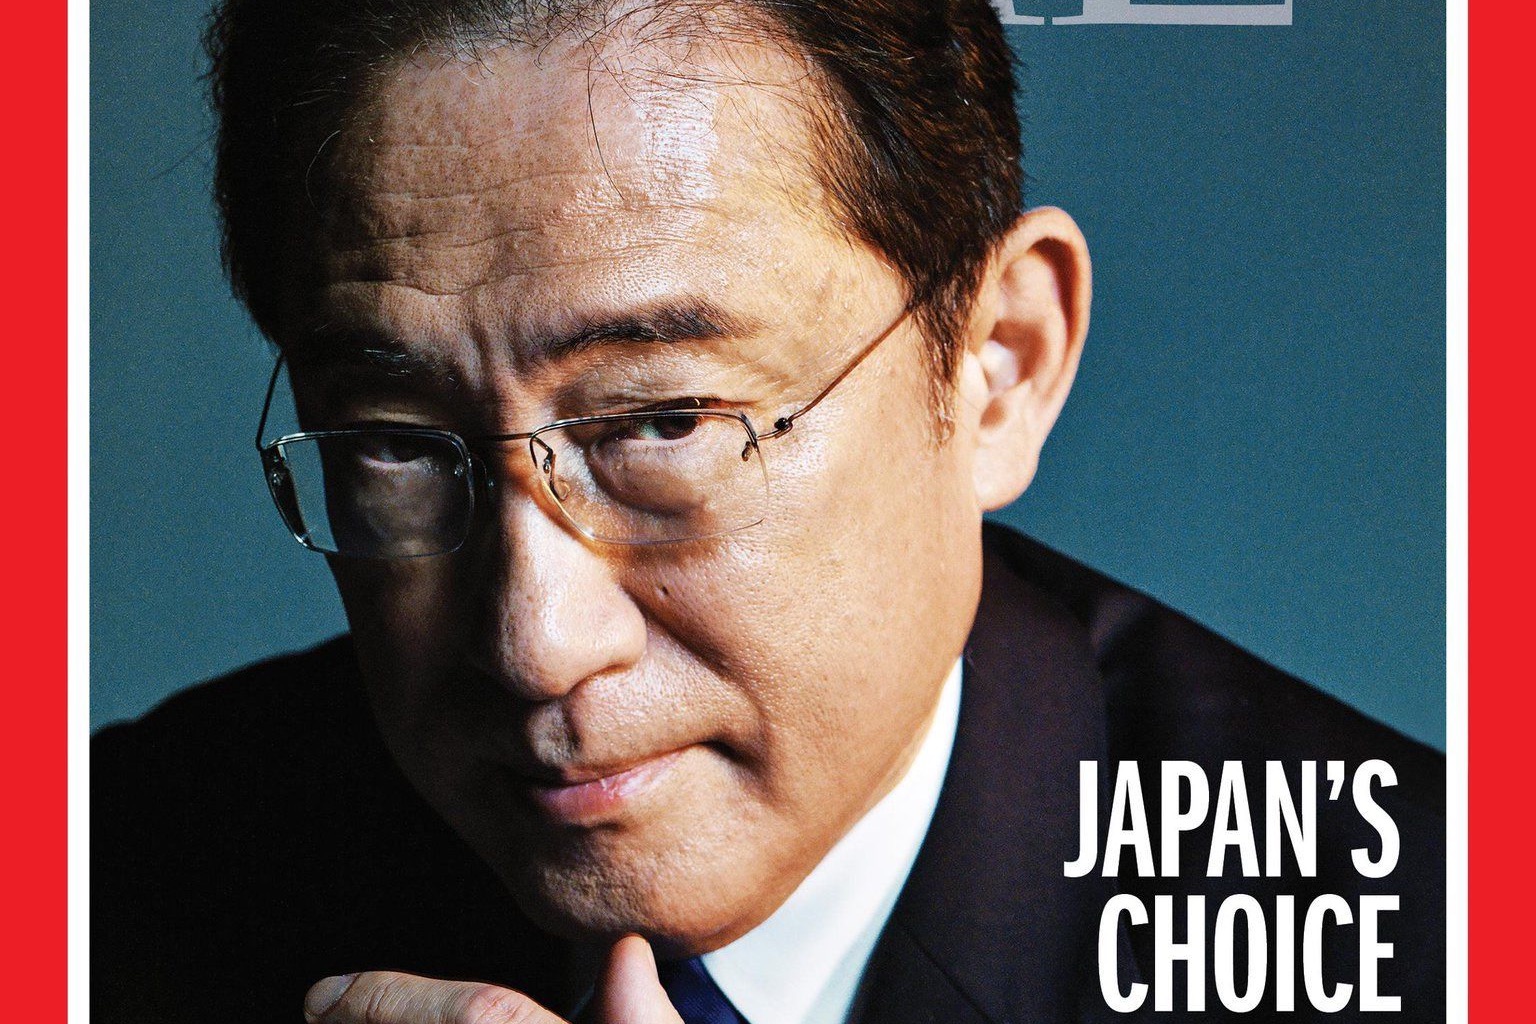 岸田文雄將登上時代雜誌封面 內文稱日本盼扮演全球更堅定角色